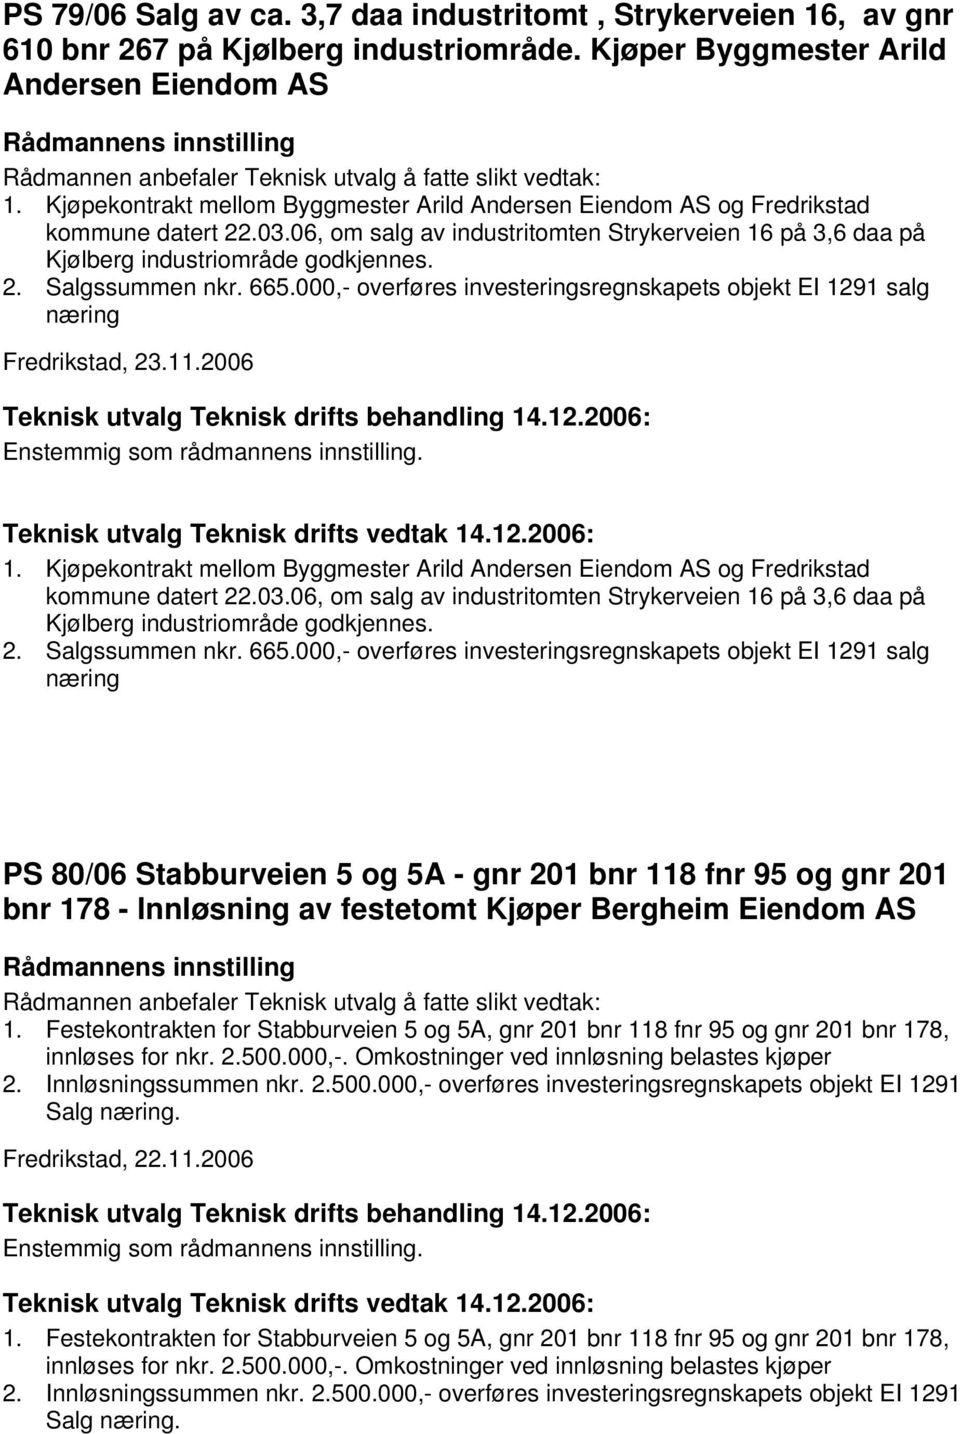 665.000,- overføres investeringsregnskapets objekt EI 1291 salg næring Fredrikstad, 23.11.2006 1.  665.